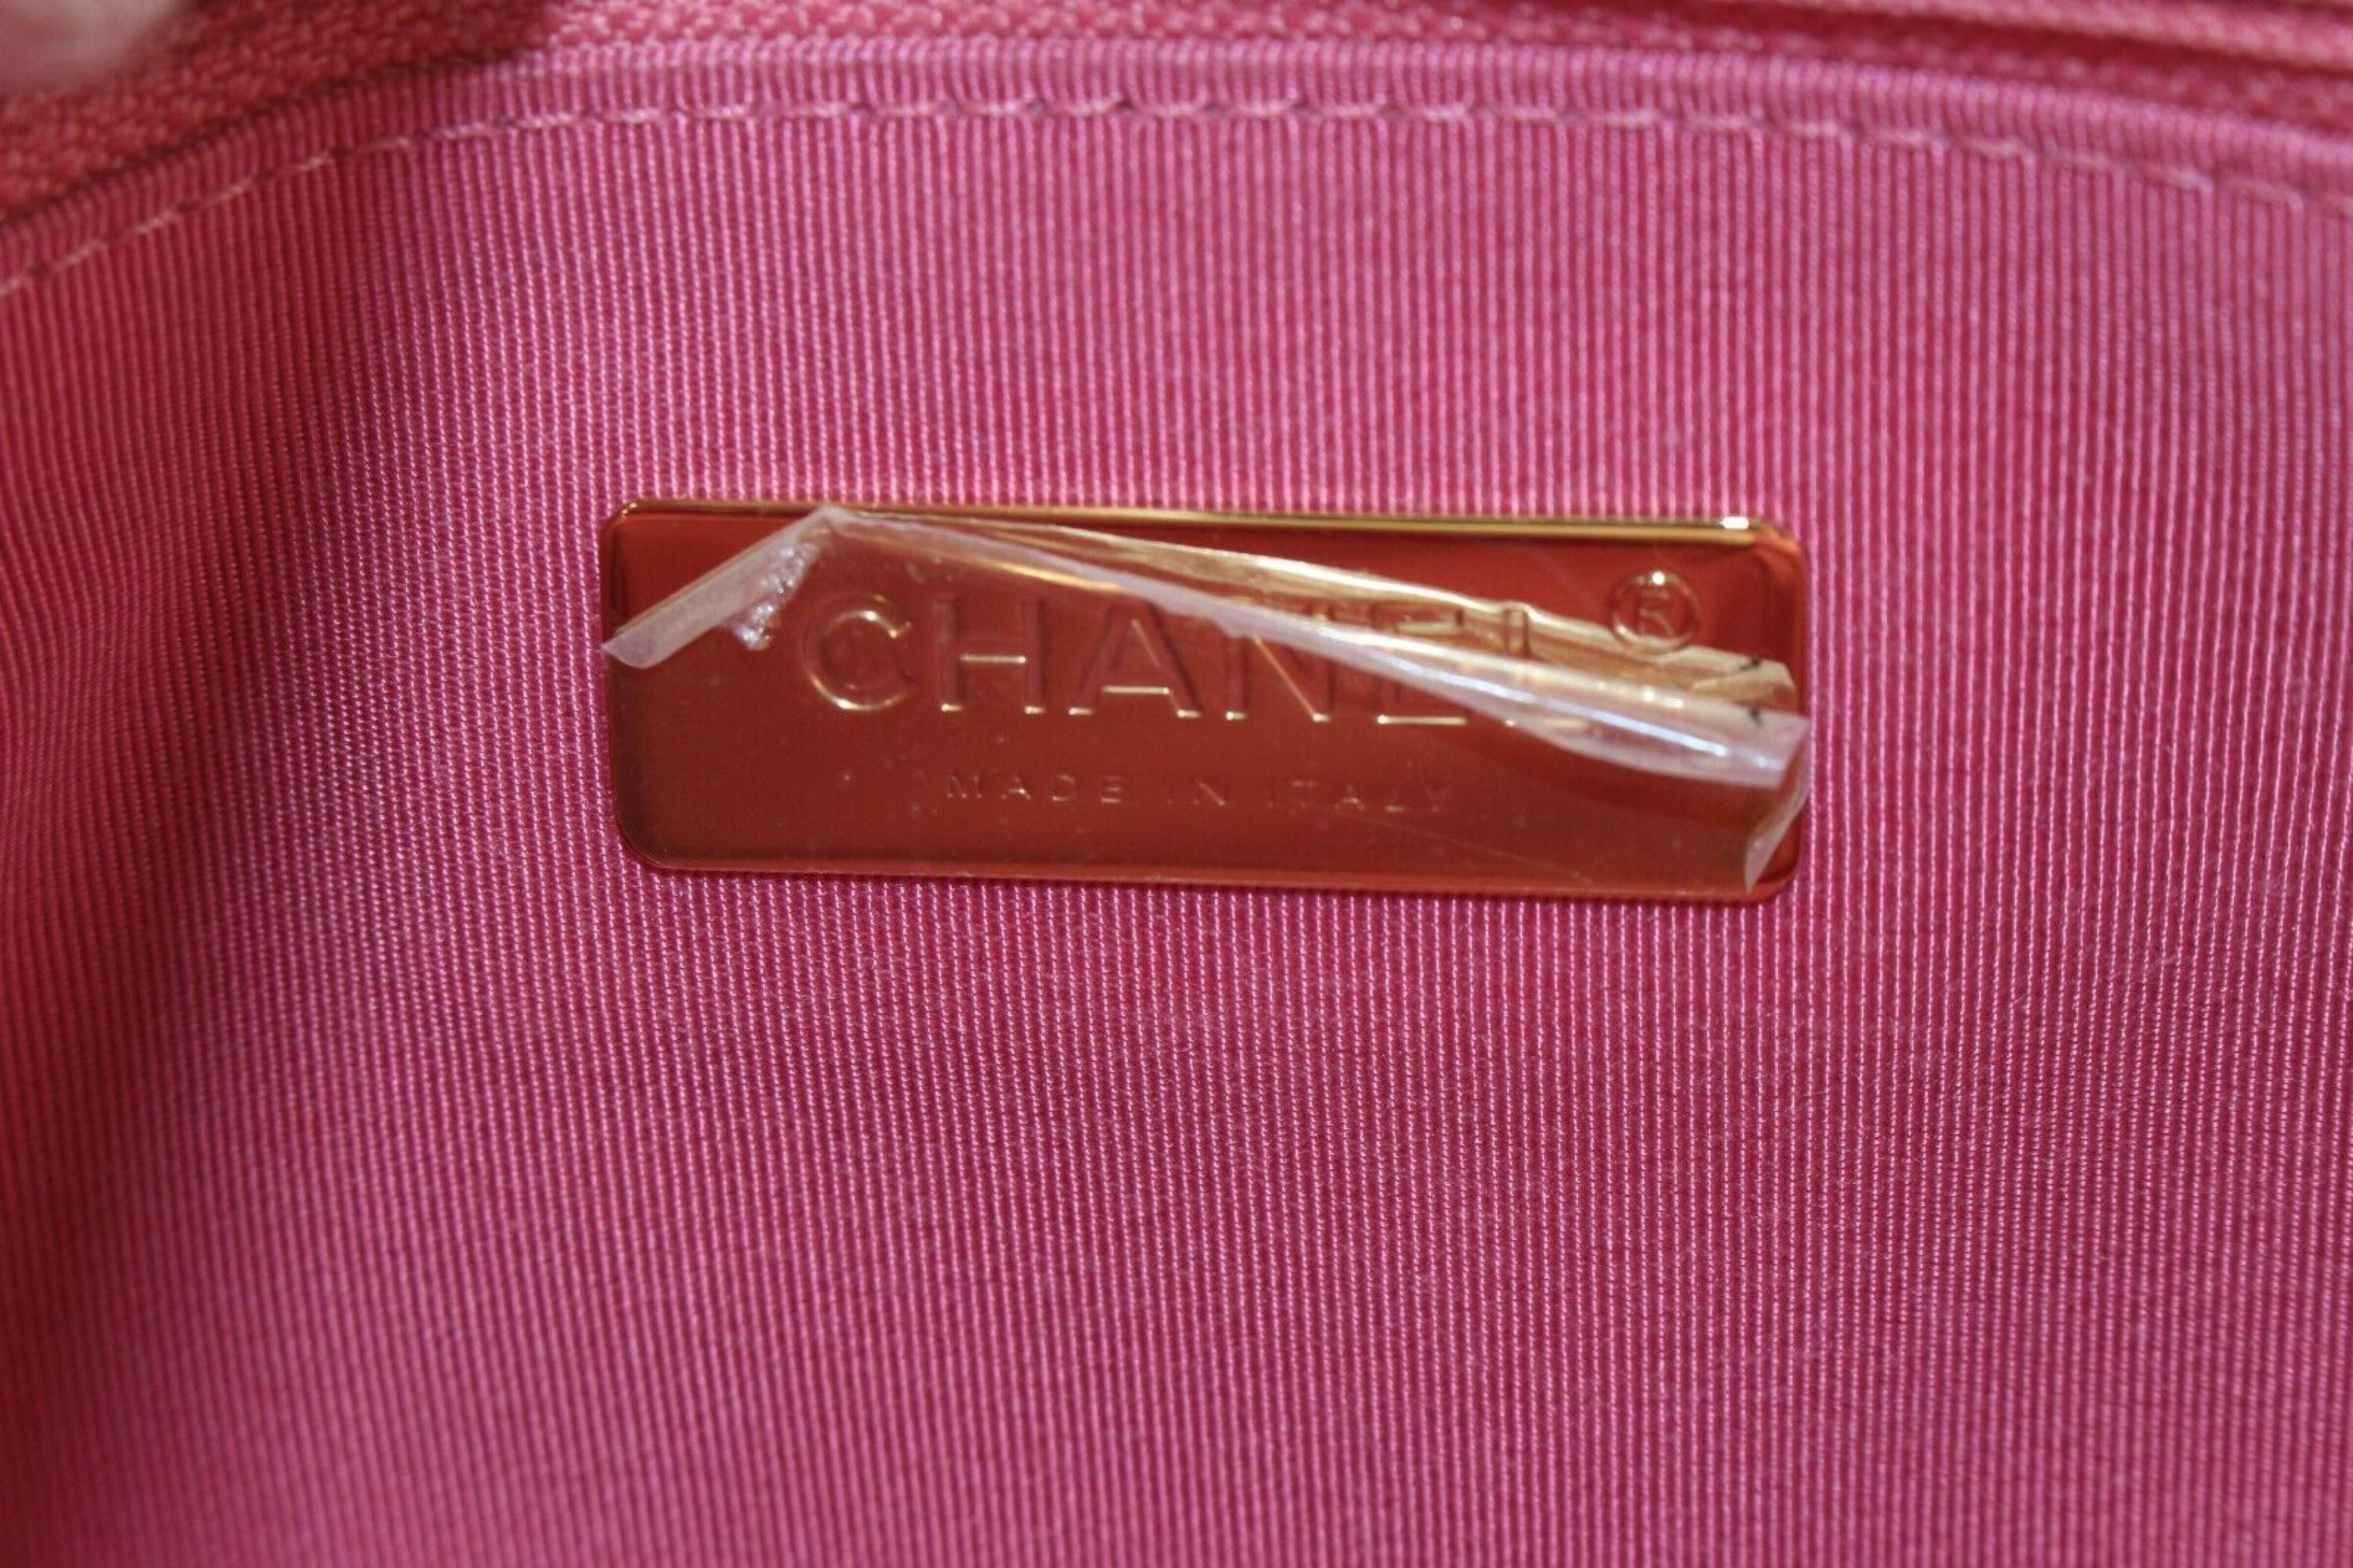 Sac à main Chanel rose matelassé à rabat moyen 19 cm 1CAS418C
Code de date/Numéro de série : 31228388

Fabriqué en : Italie

Mesures : Longueur :  Largeur de 11